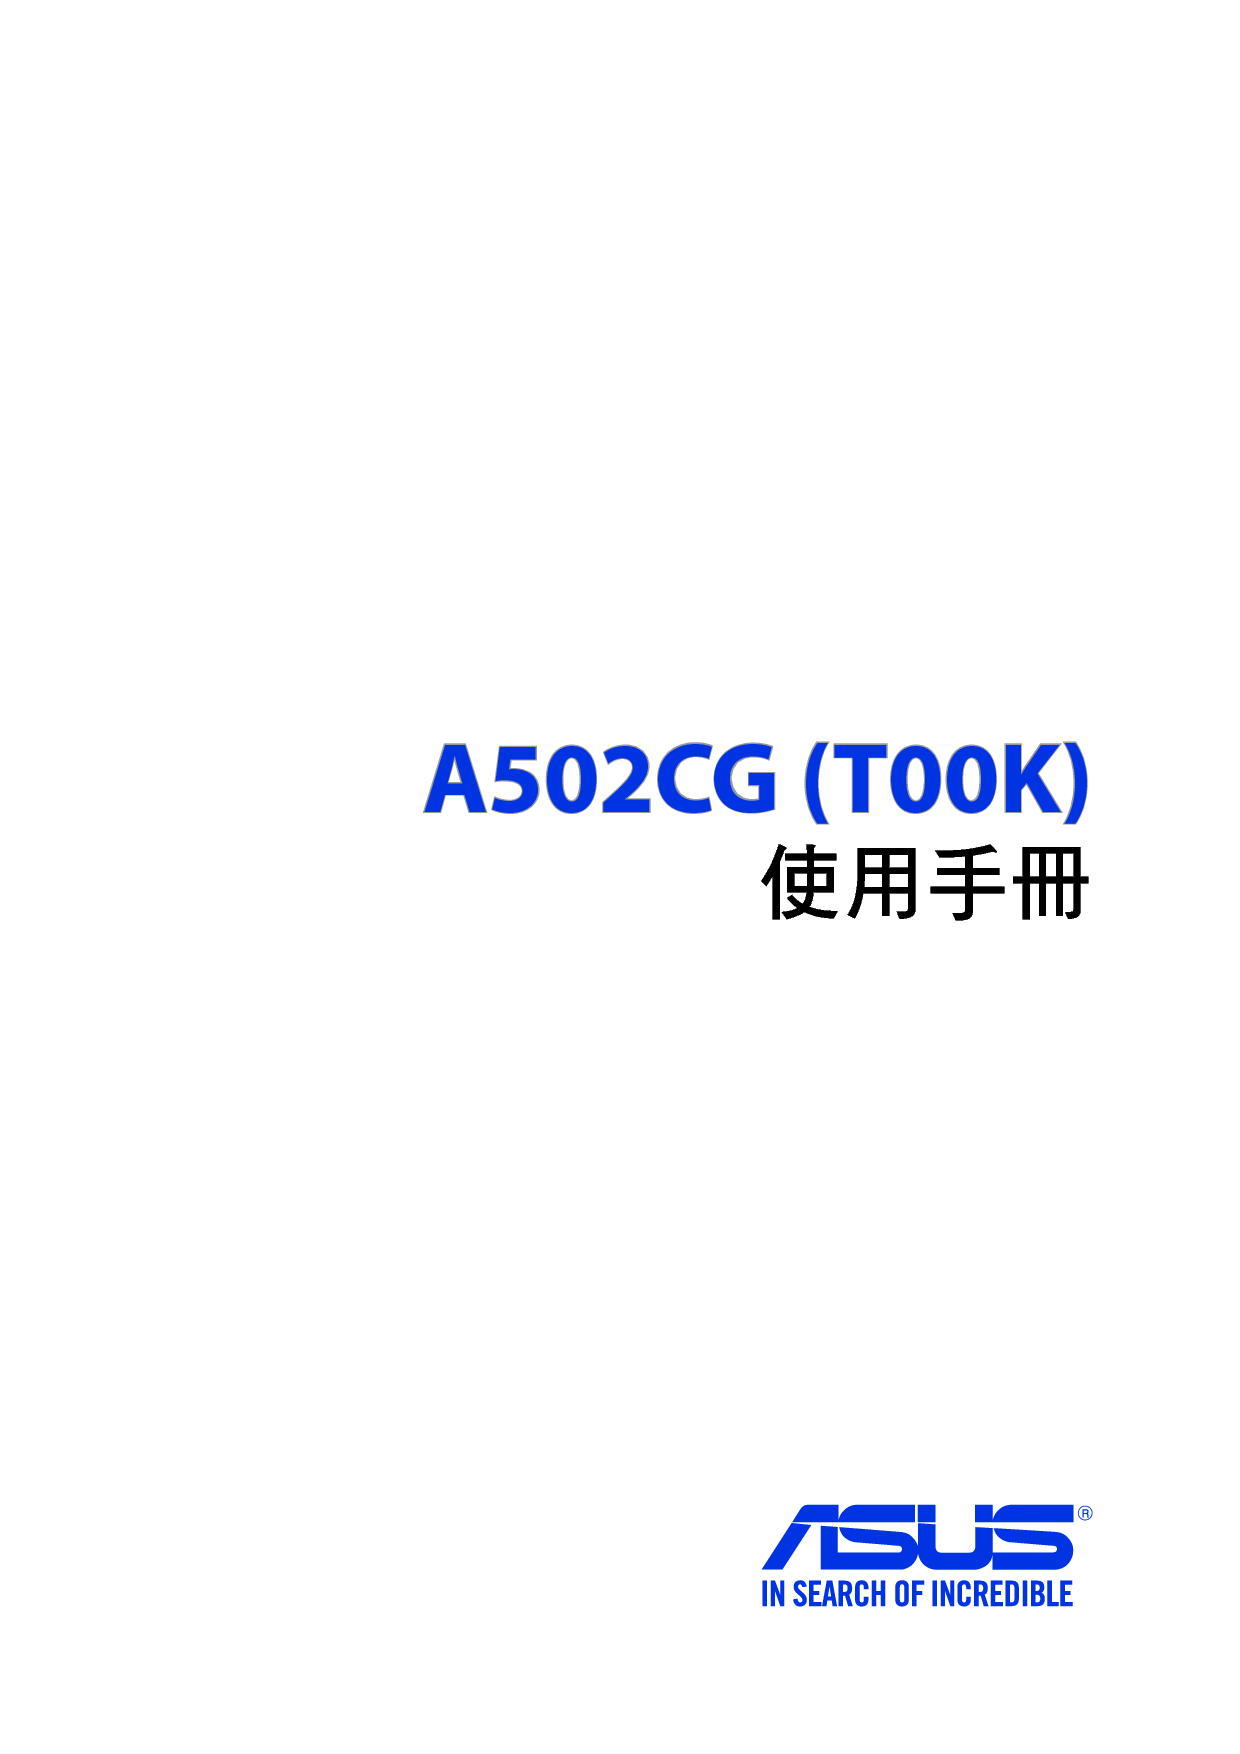 华硕 Asus A502CG, TOOK 繁体 使用手册 封面